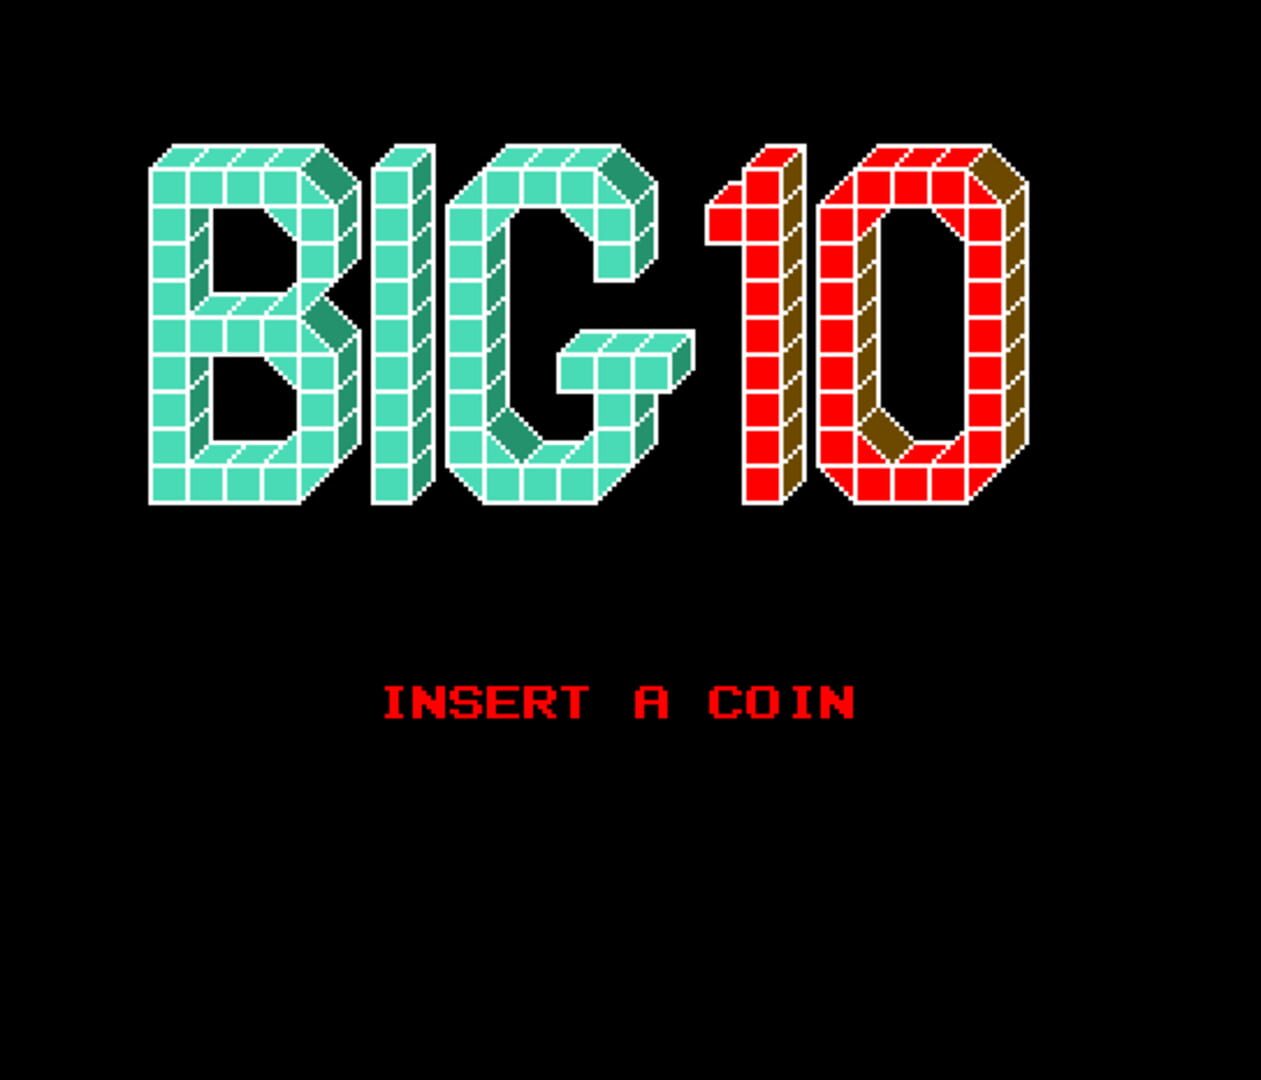 Big 10